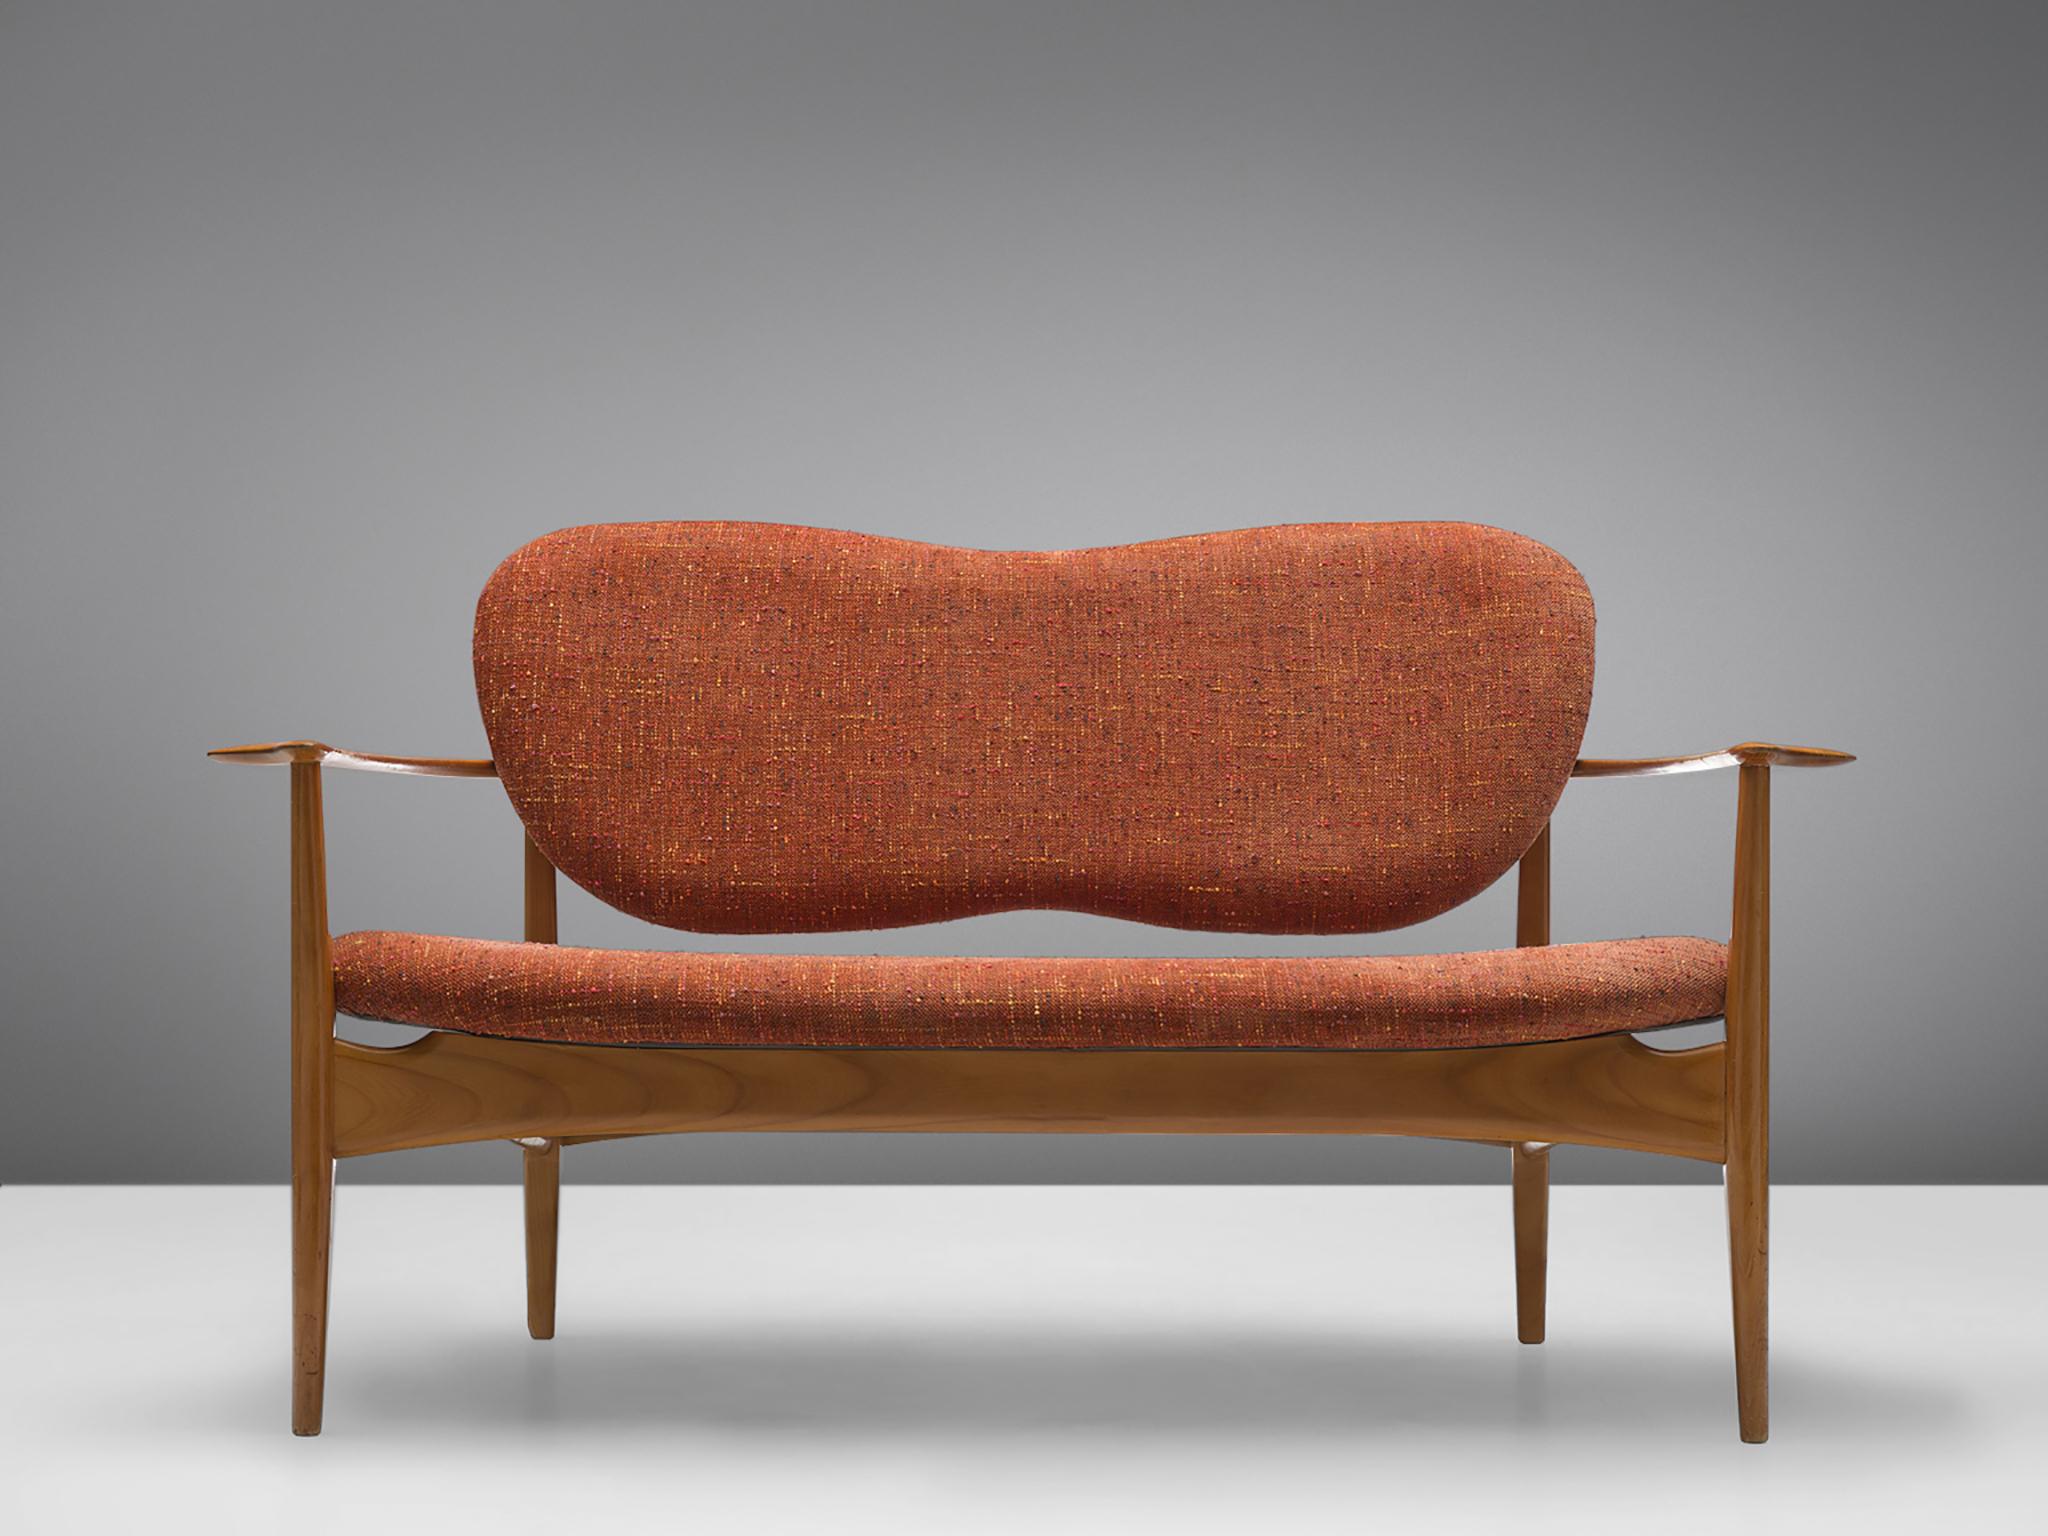 Sofa, Stoff, Kirsche, Dänemark, 1950er Jahre.

Dieses elegante, geschwungene Sofa hat eine gewellte, schmetterlingsförmige Rückenlehne und vier spitz zulaufende Holzbeine. Das Sofa ist mit hohen, geschwungenen Armlehnen ausgestattet. Der Stoff